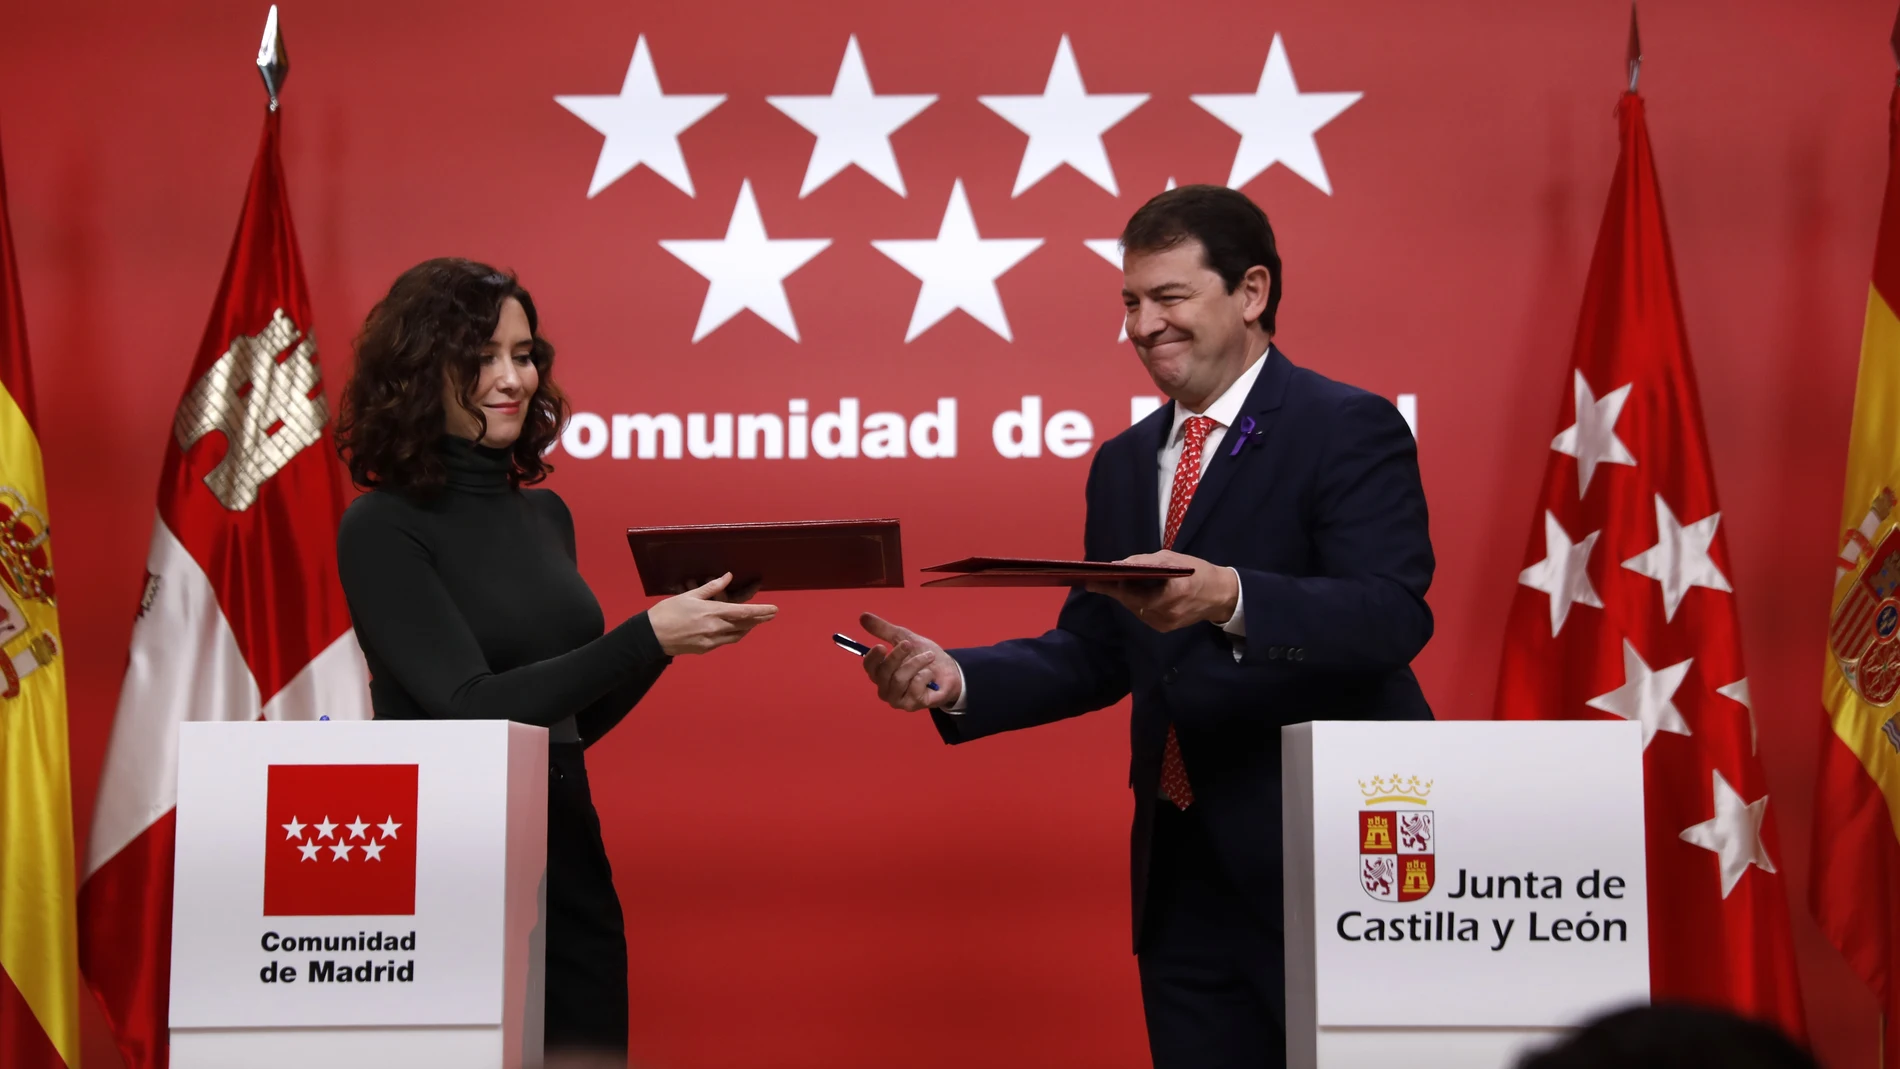 La Presidenta de la Comunidad de Madrid, Isabel Diaz Ayuso, y el Presidente de la Comunidad de Castilla y Leon, Alfonso Fernandez Mañueco, firman acuerdo de colaboracion es distintas materias entre ambas comunidades autonomas.